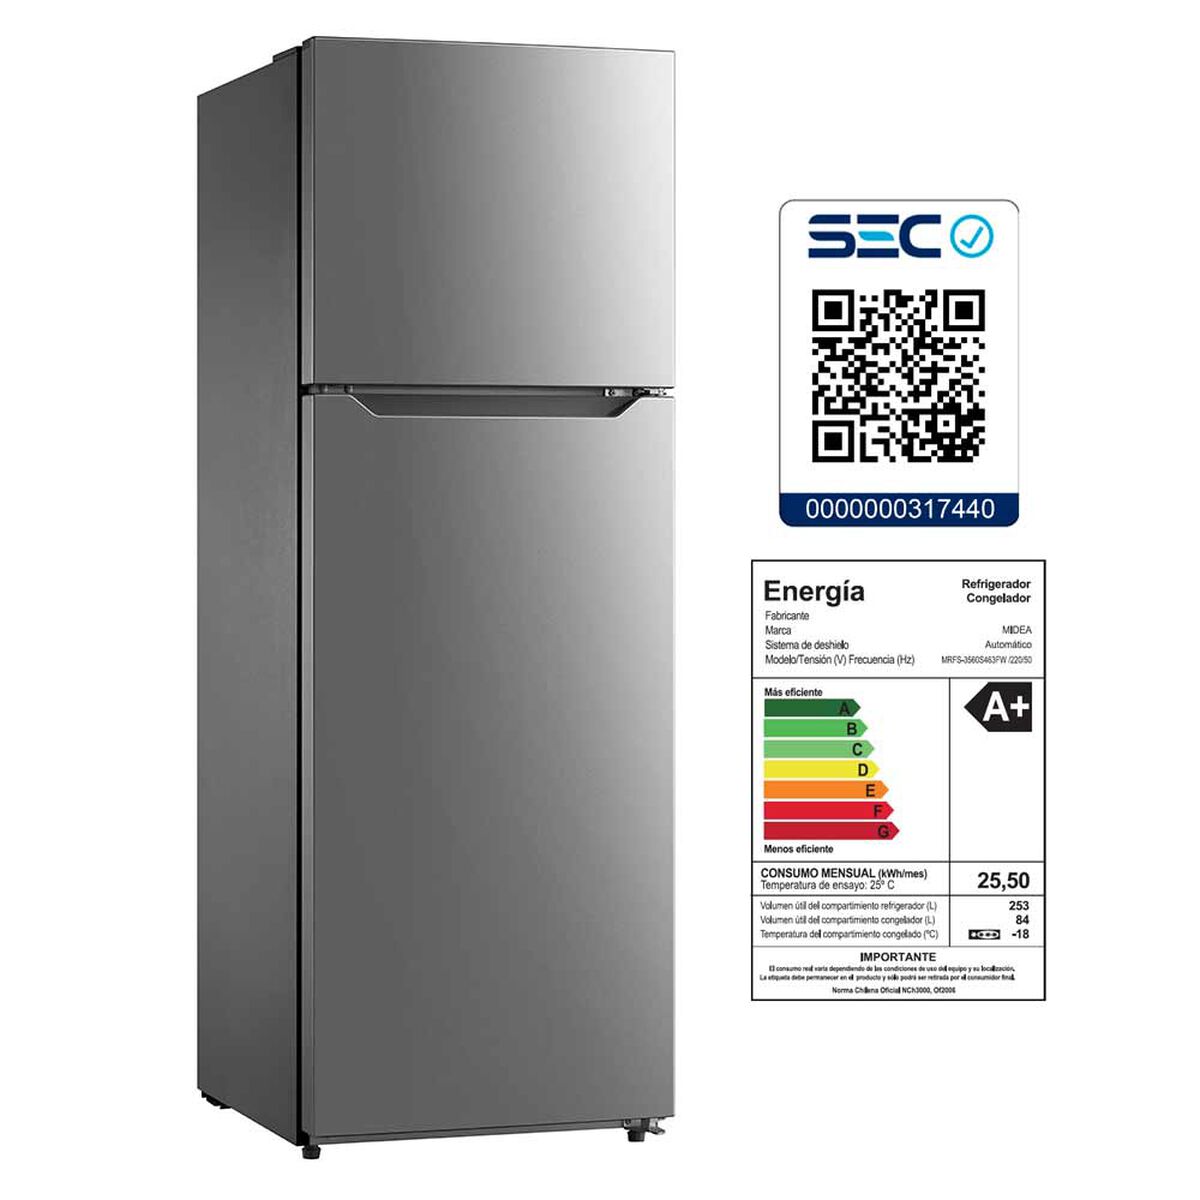 Refrigerador No Frost Midea MRFS-3560S463FW 340 lt